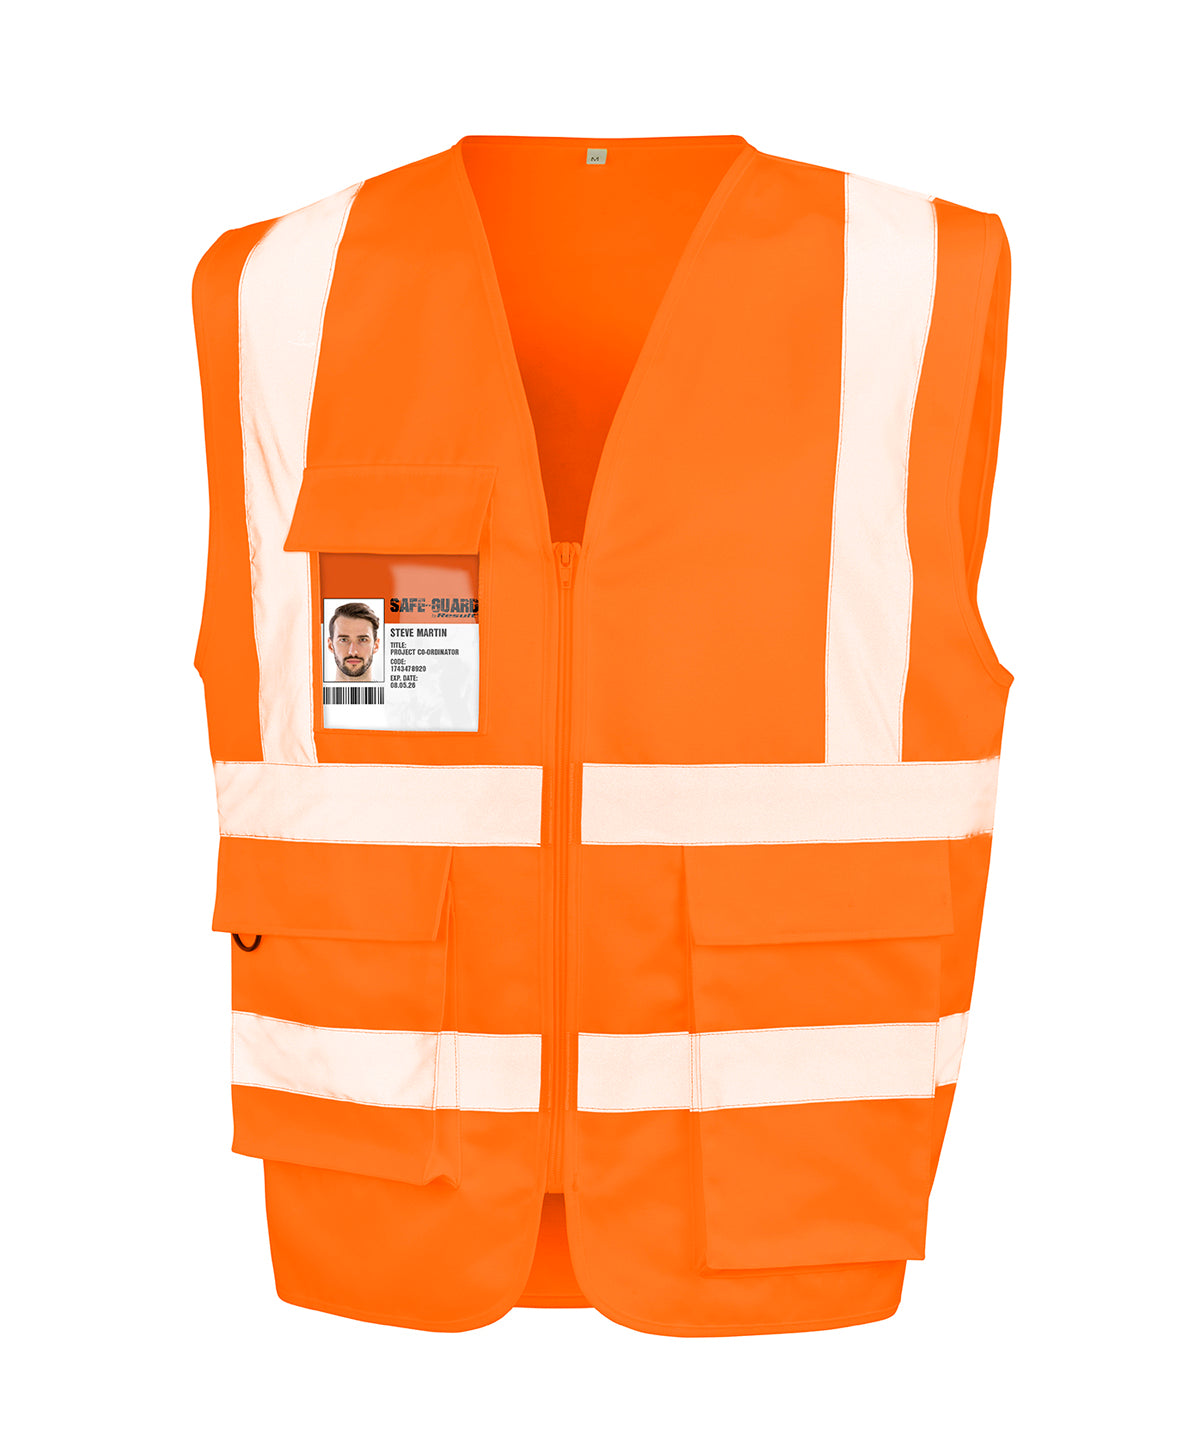 Öryggisvesti - Heavy Duty Polycotton Security Vest